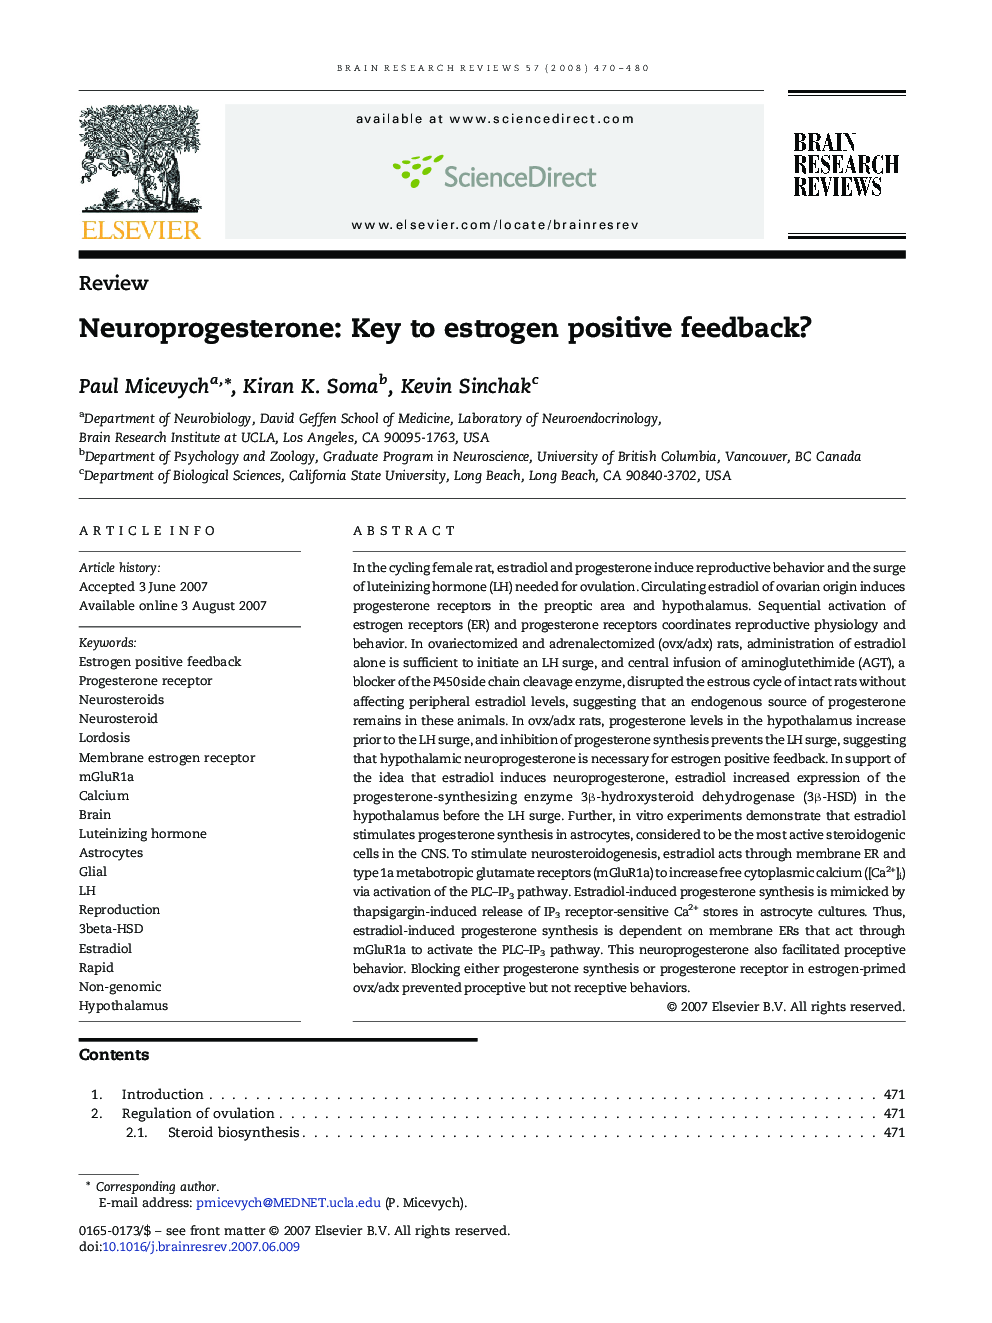 Neuroprogesterone: Key to estrogen positive feedback?